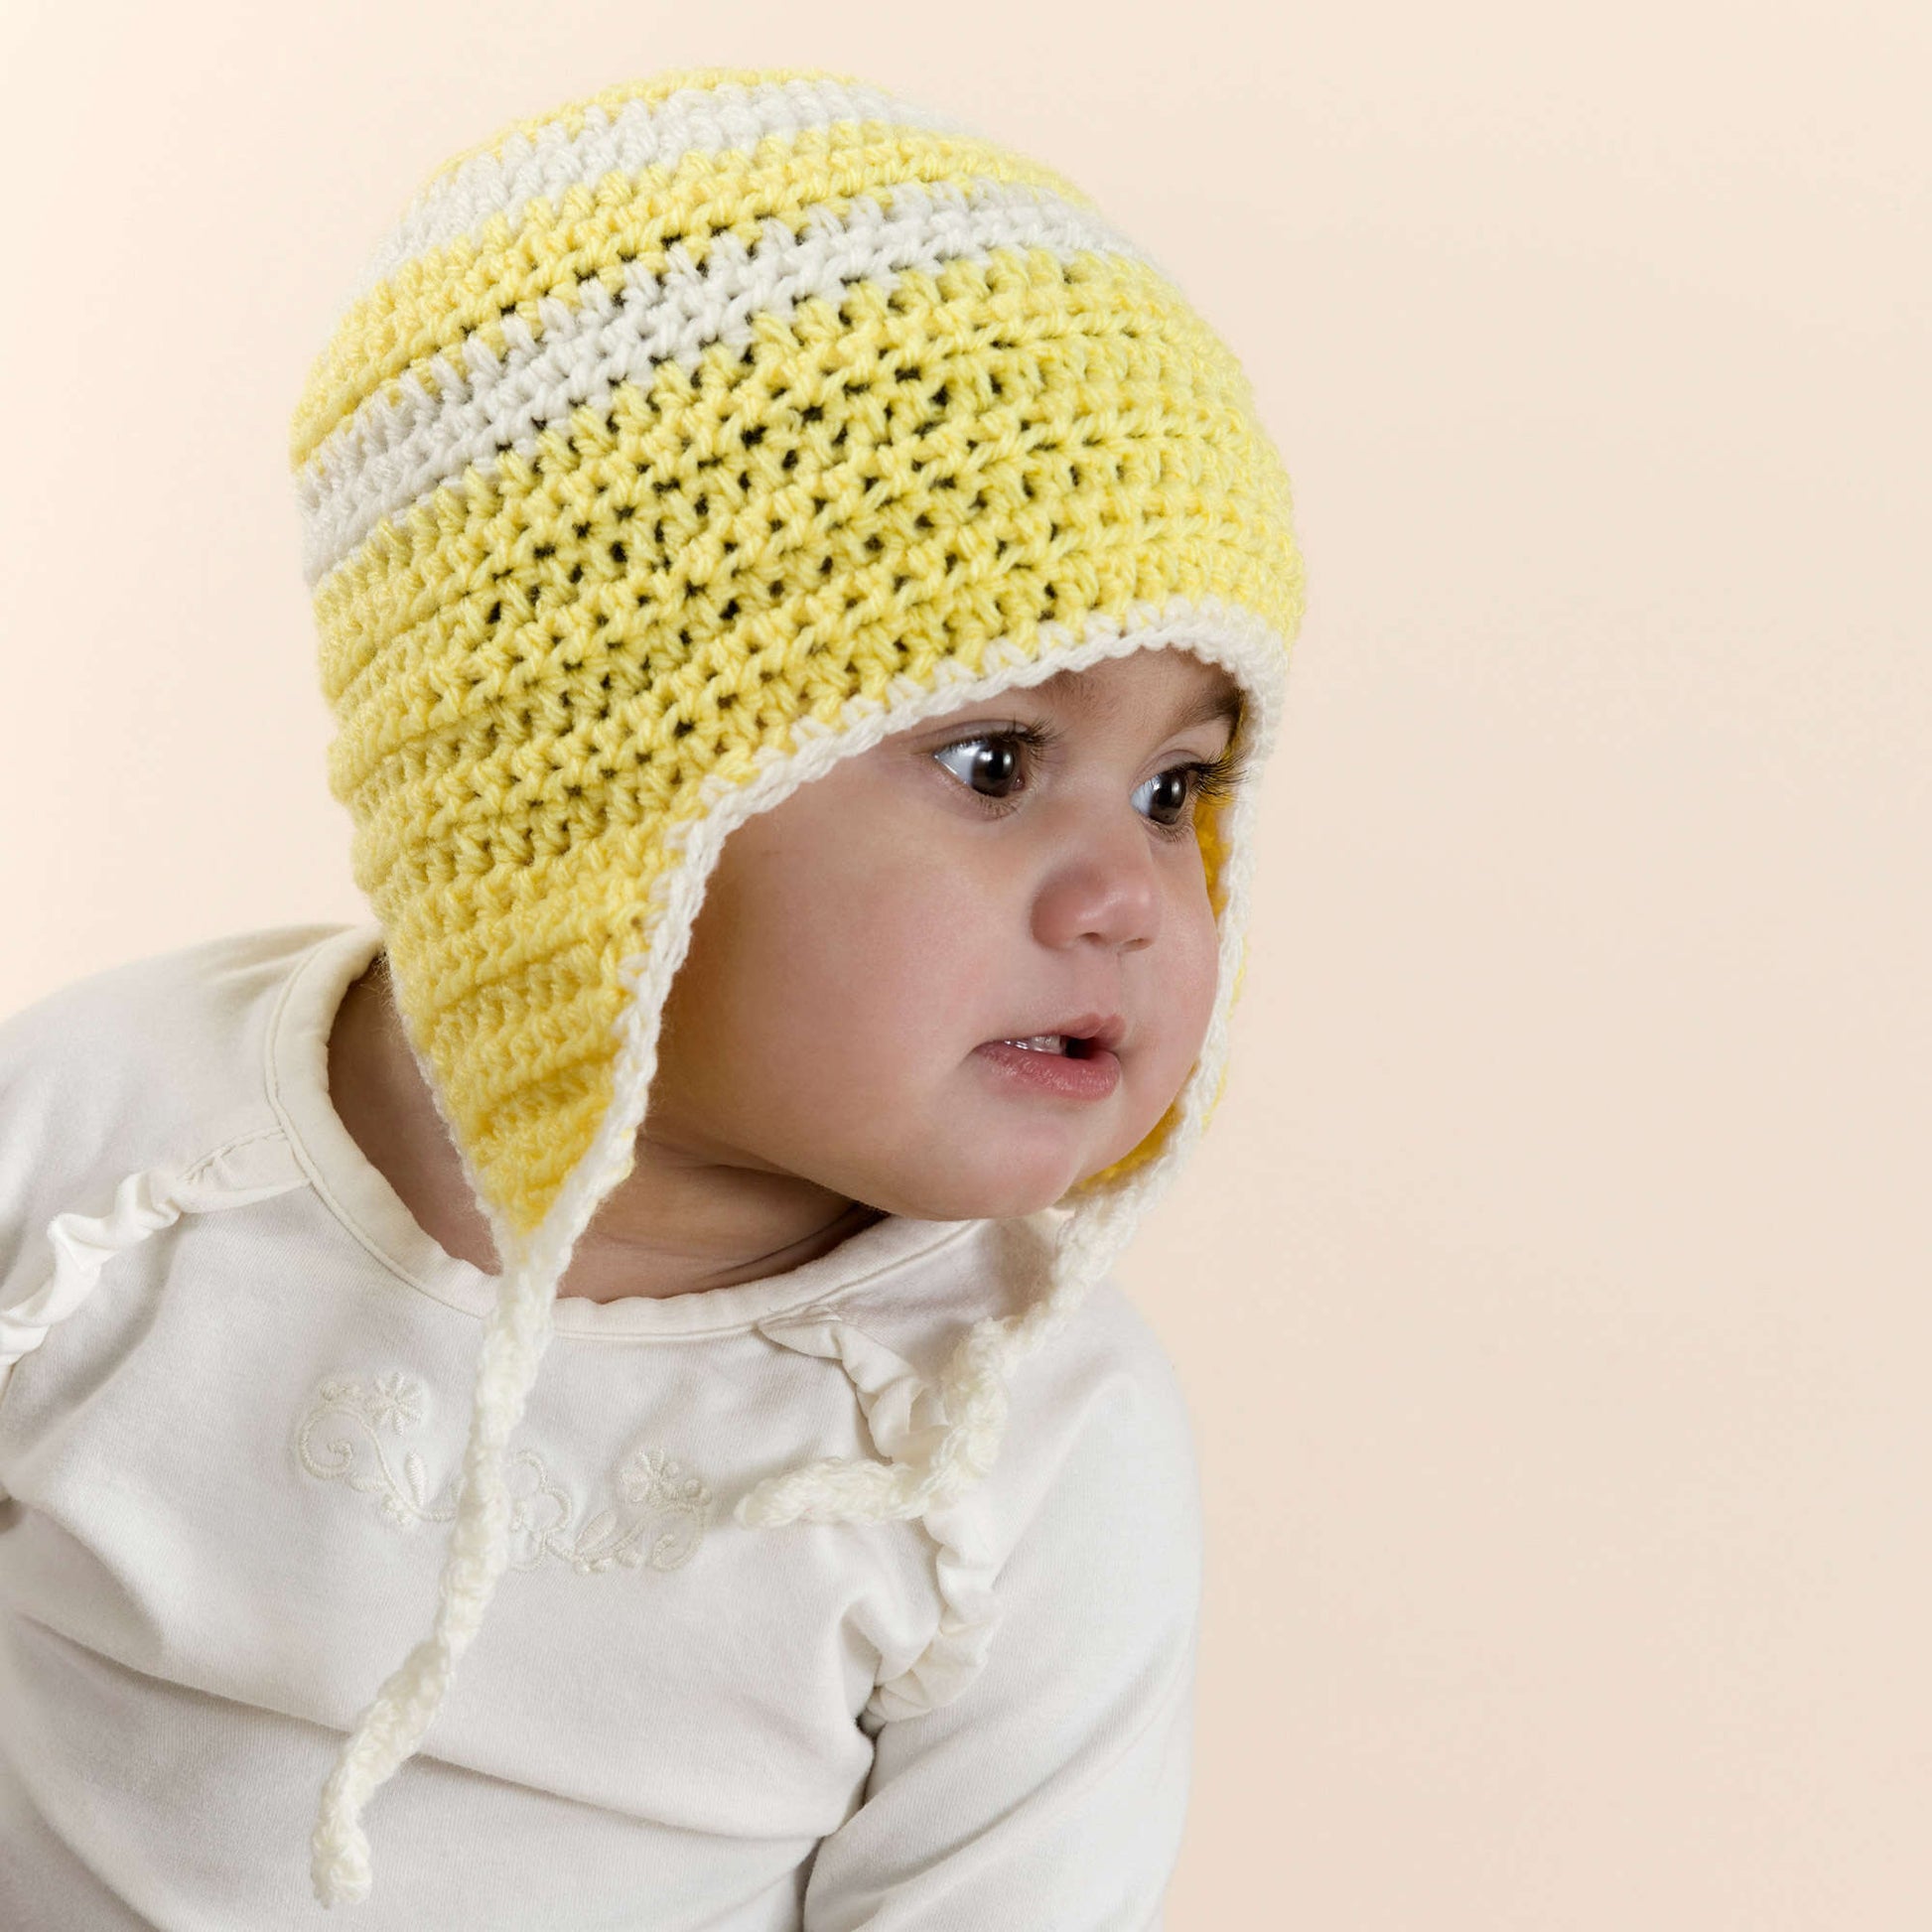 Free Red Heart Child's Crochet Earflap Hat Pattern